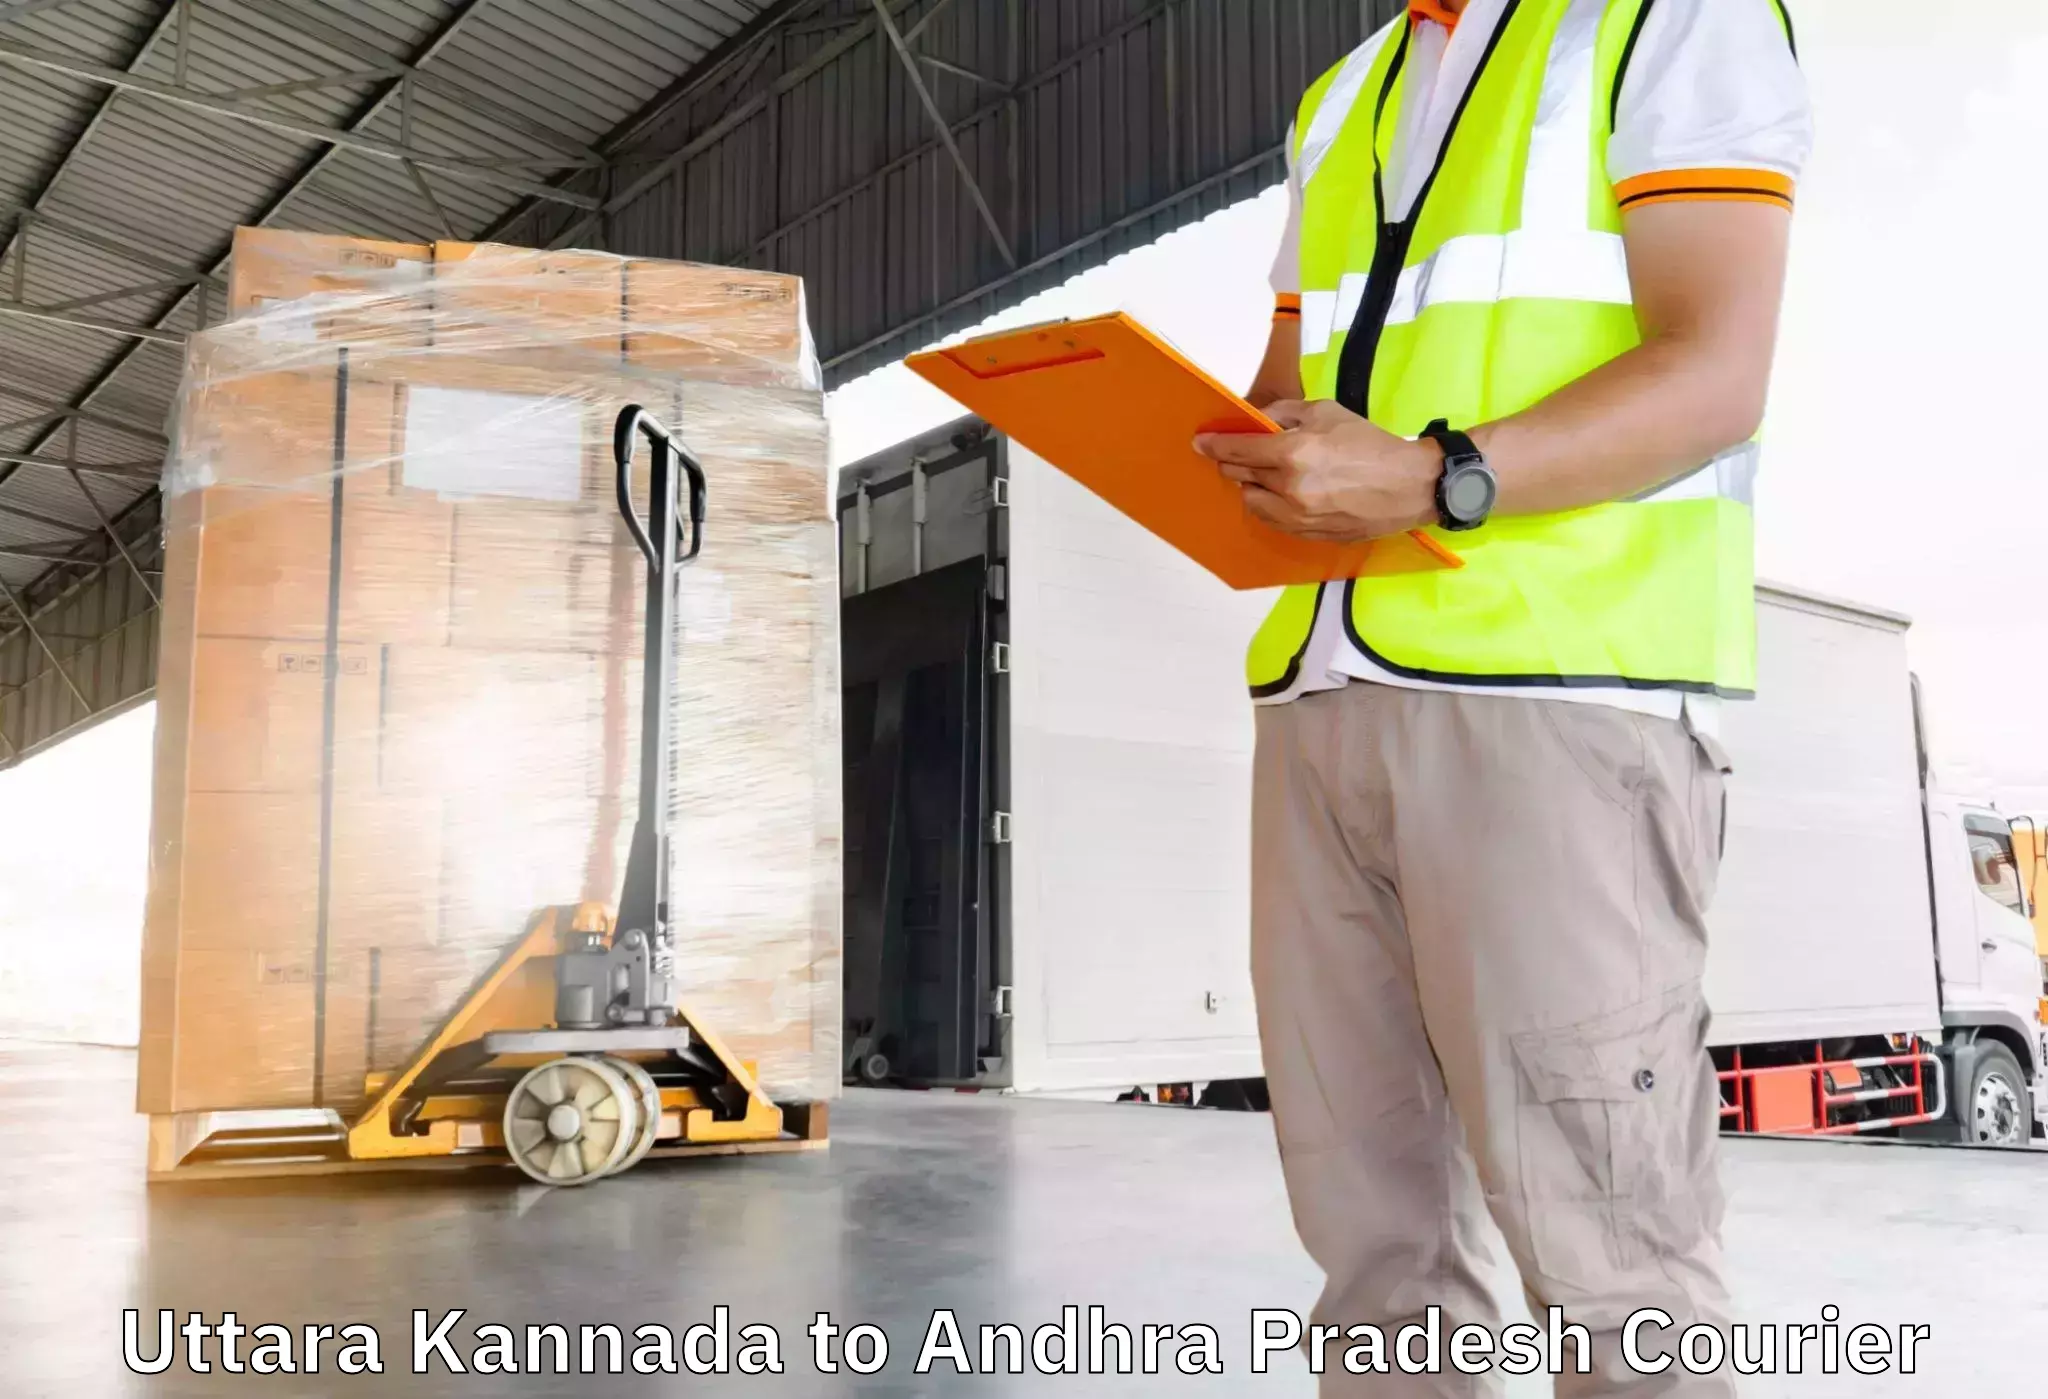 Furniture transport solutions Uttara Kannada to Movva